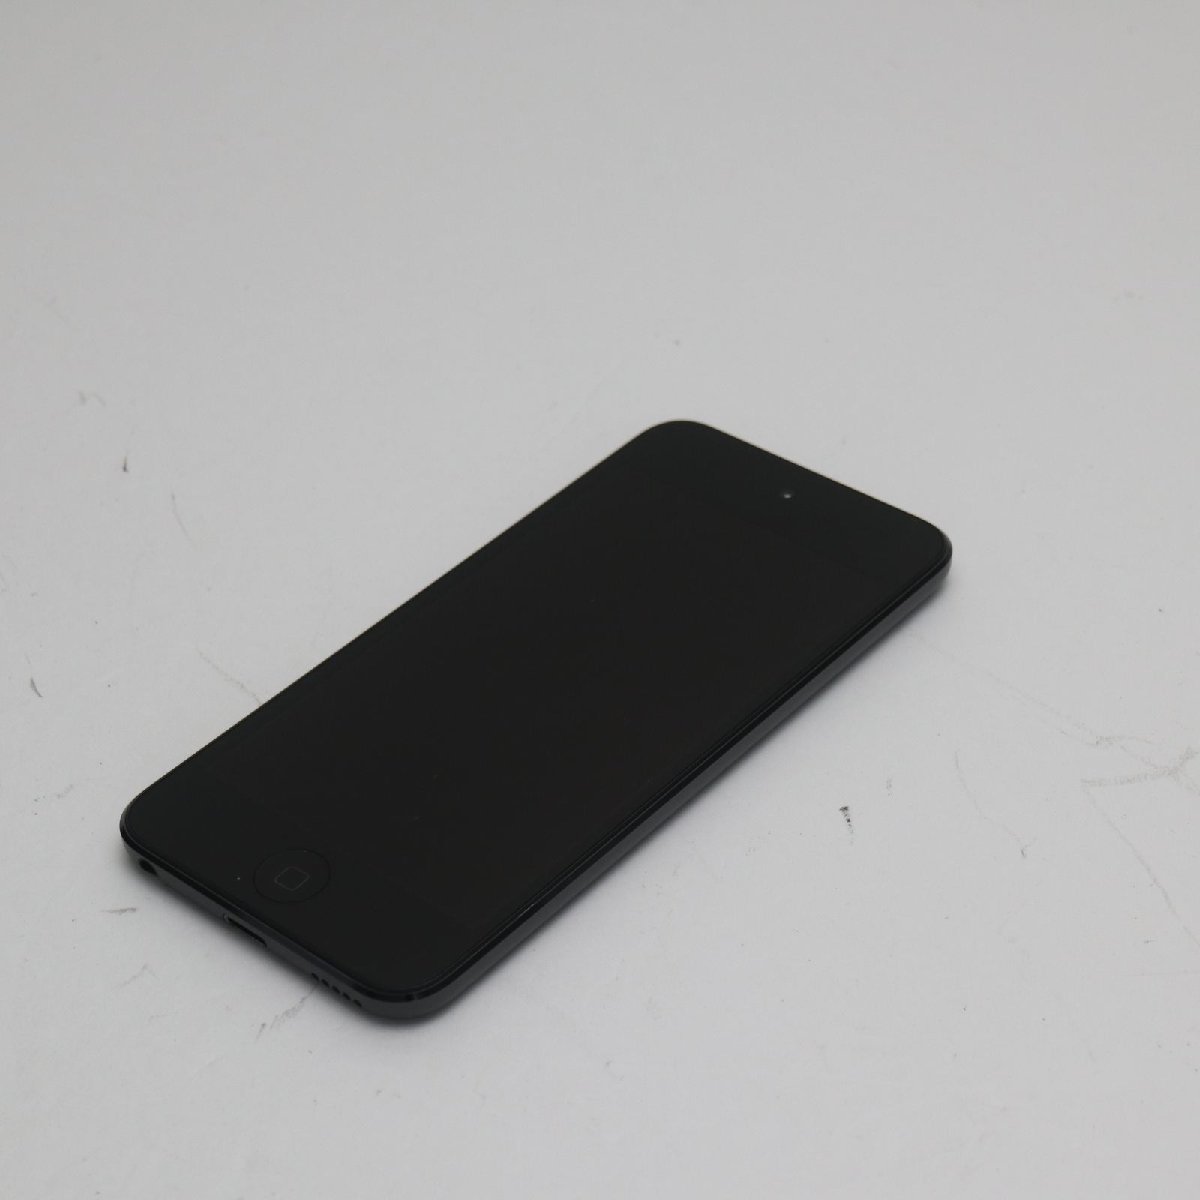 新品同様iPod touch 第7世代32GB スペースグレイ即日発送Apple